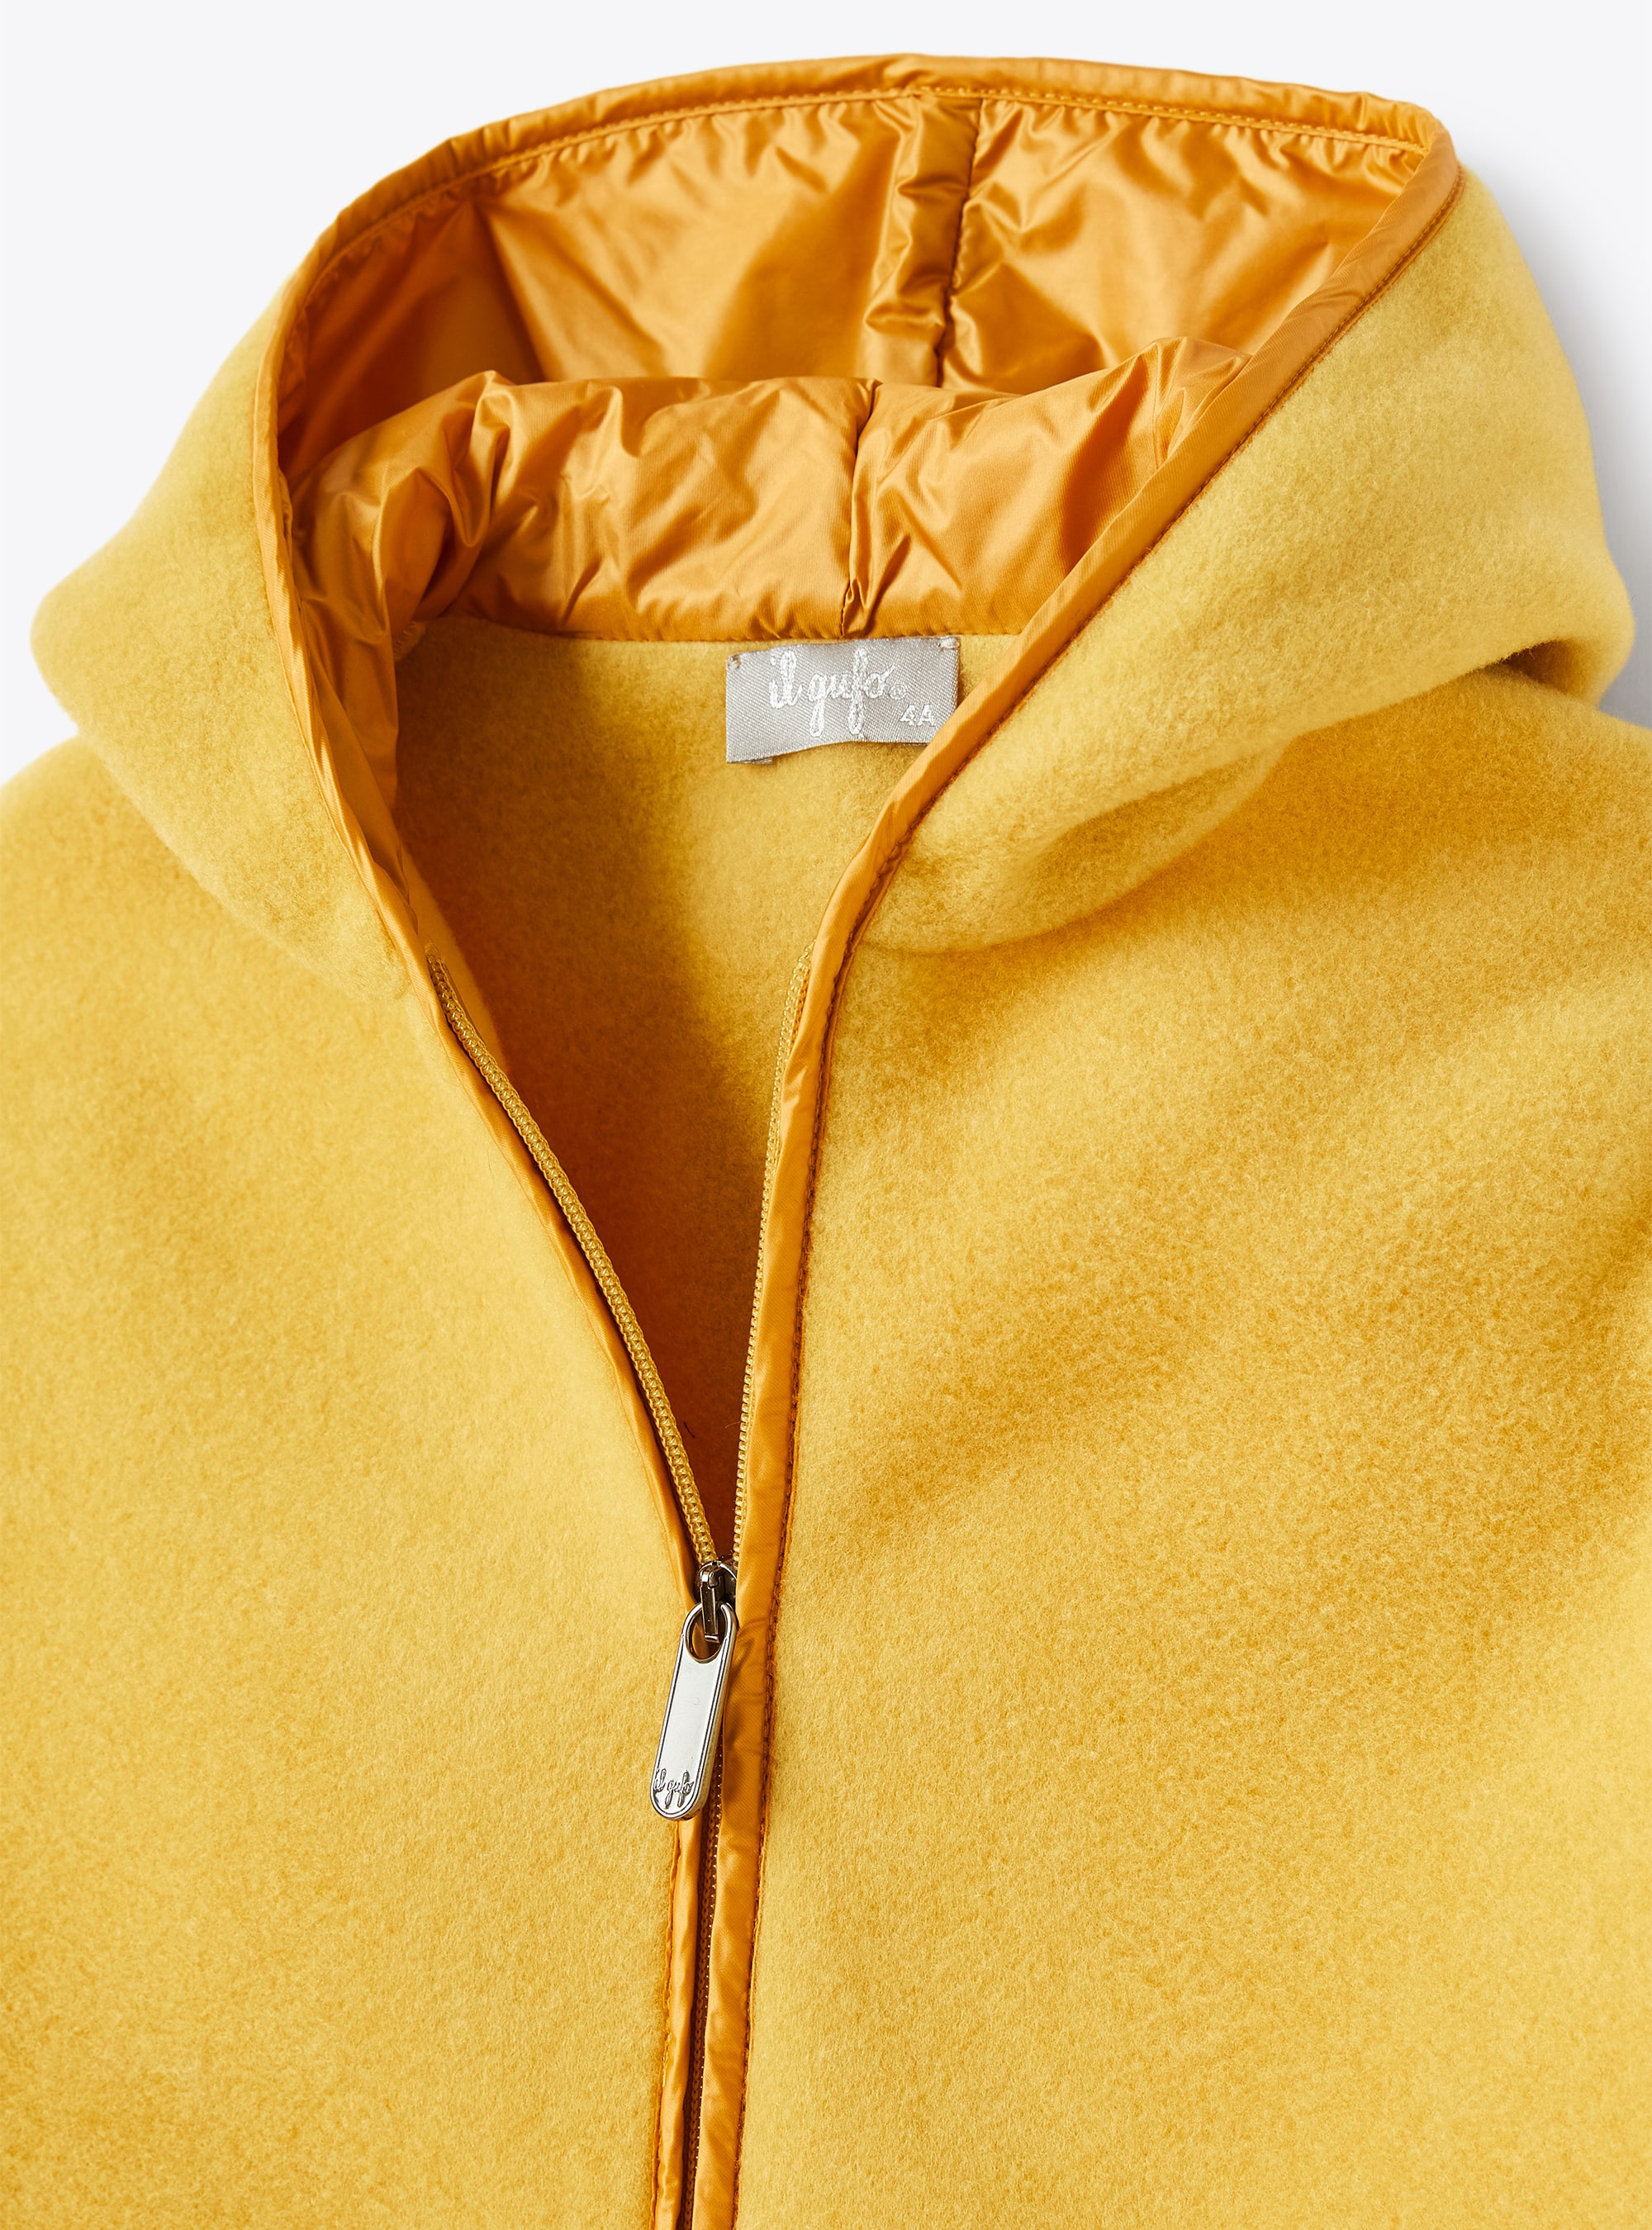 Jacke aus gelbem Fleece mit Rüschen - Gelb | Il Gufo